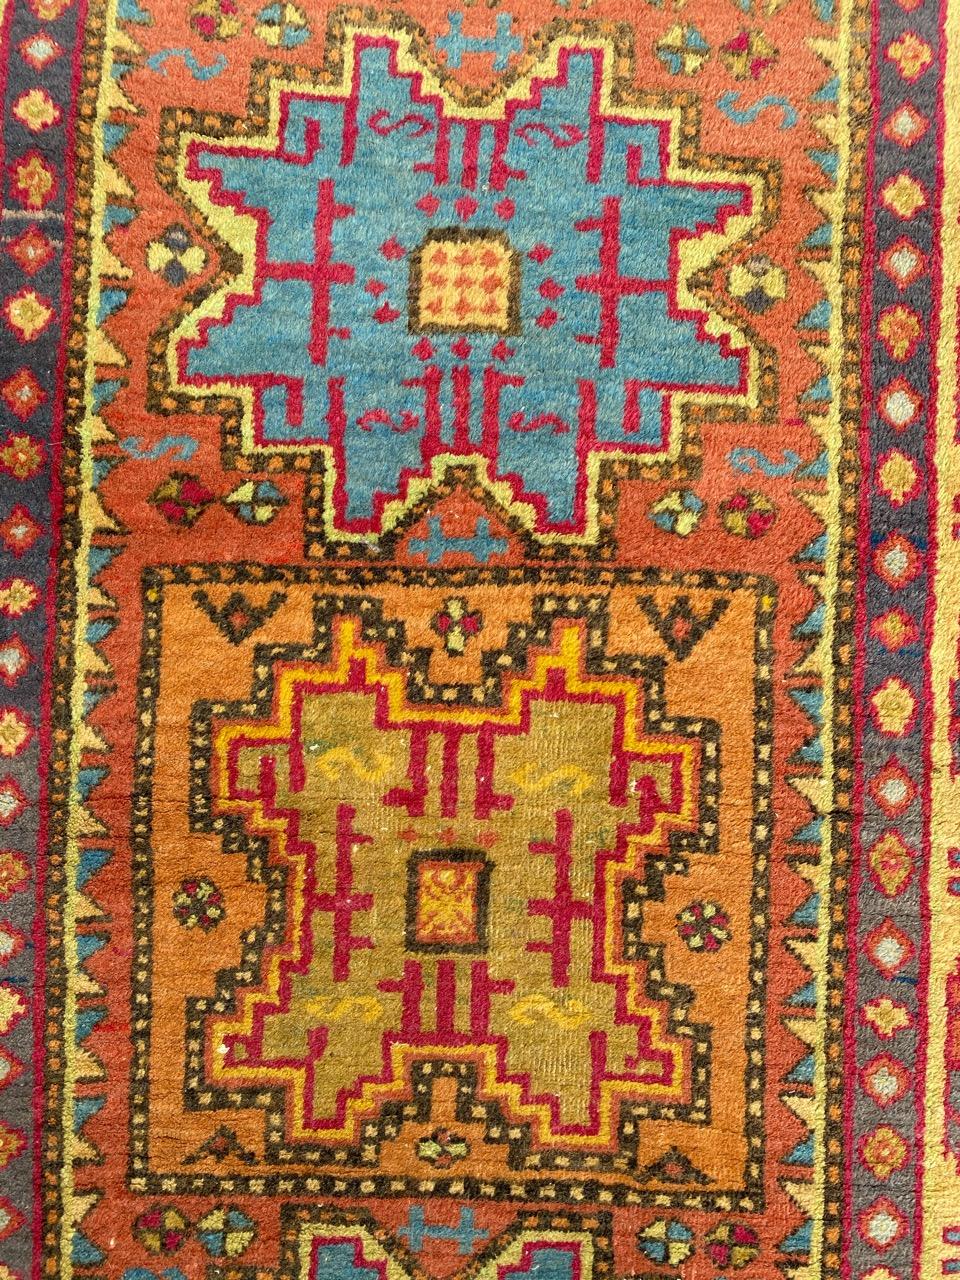 Schöner Teppich aus der Mitte des Jahrhunderts mit einem schönen geometrischen Muster und schönen Farben, komplett handgeknüpft mit Wollsamt auf Baumwollbasis.